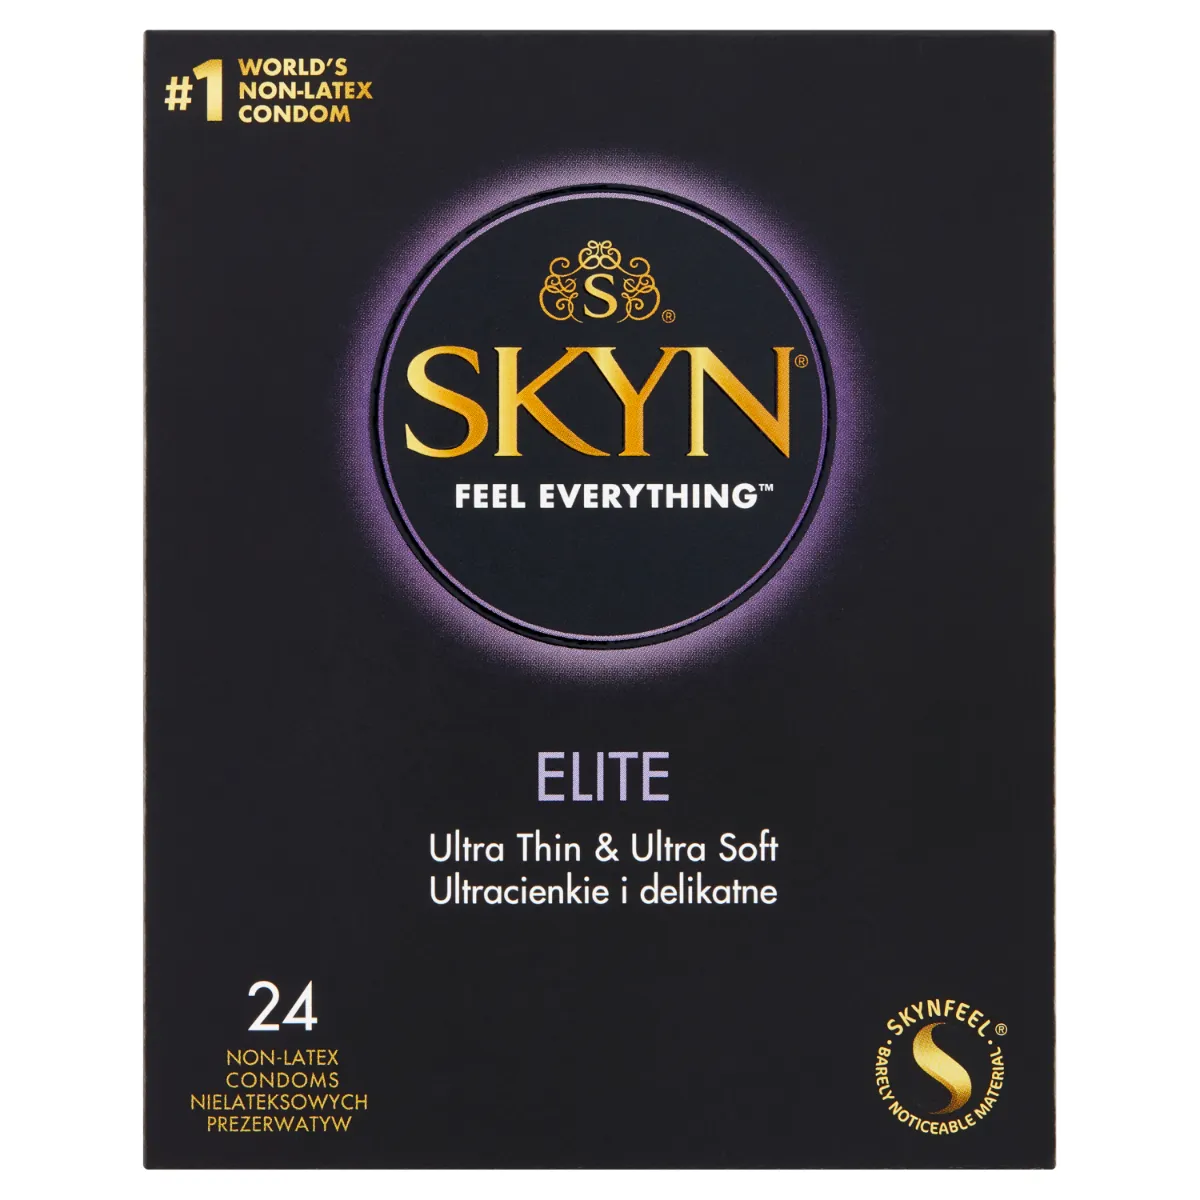 Skyn Elite, prezerwatywy nielateksowe, 24 sztuki